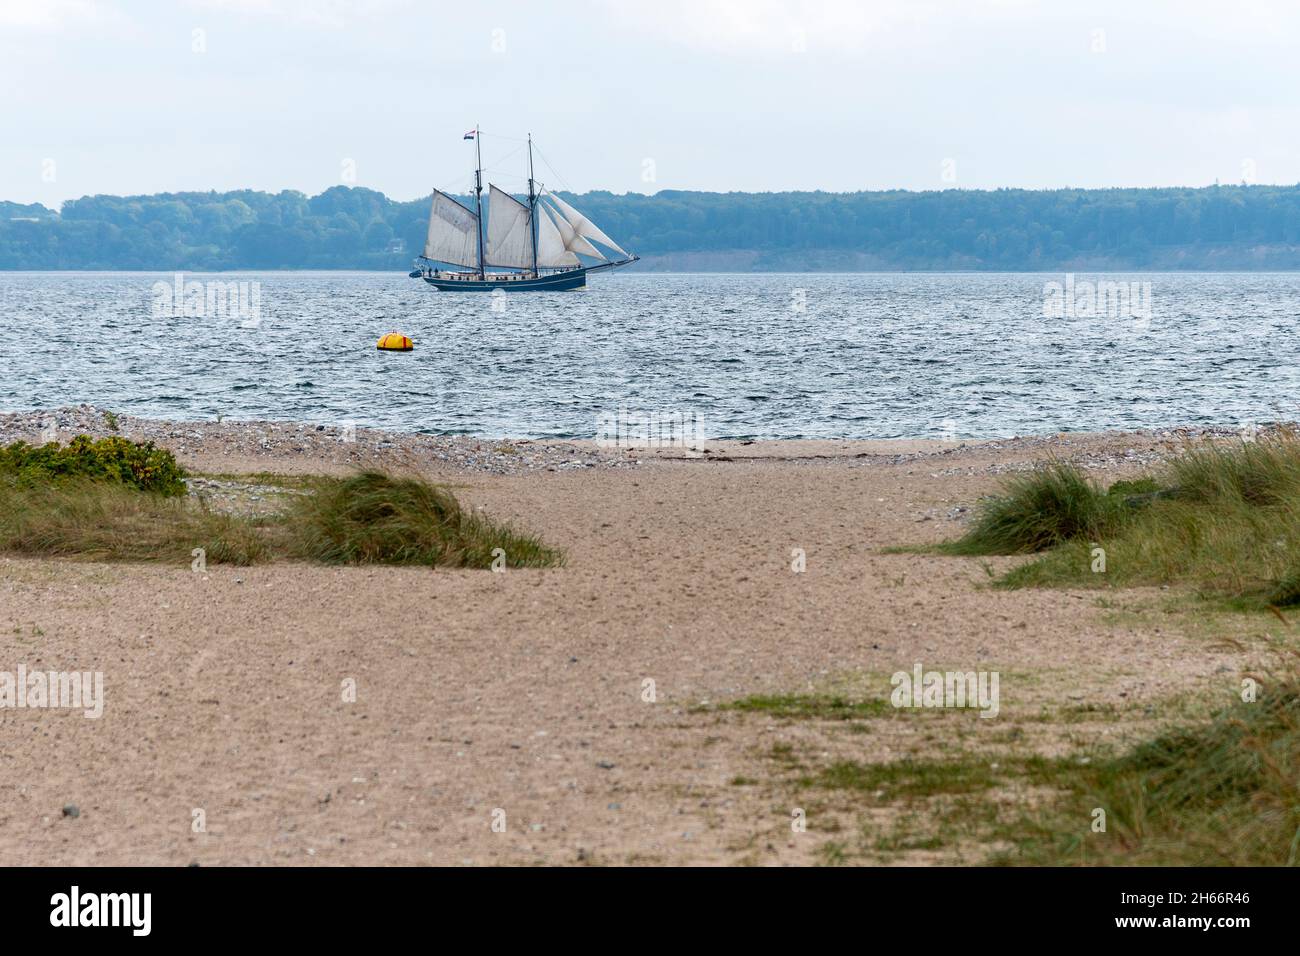 Segelschiff auf der Ostsee in der Eckernförder Bucht, Schleswig-Holstein, Deutschland Foto de stock